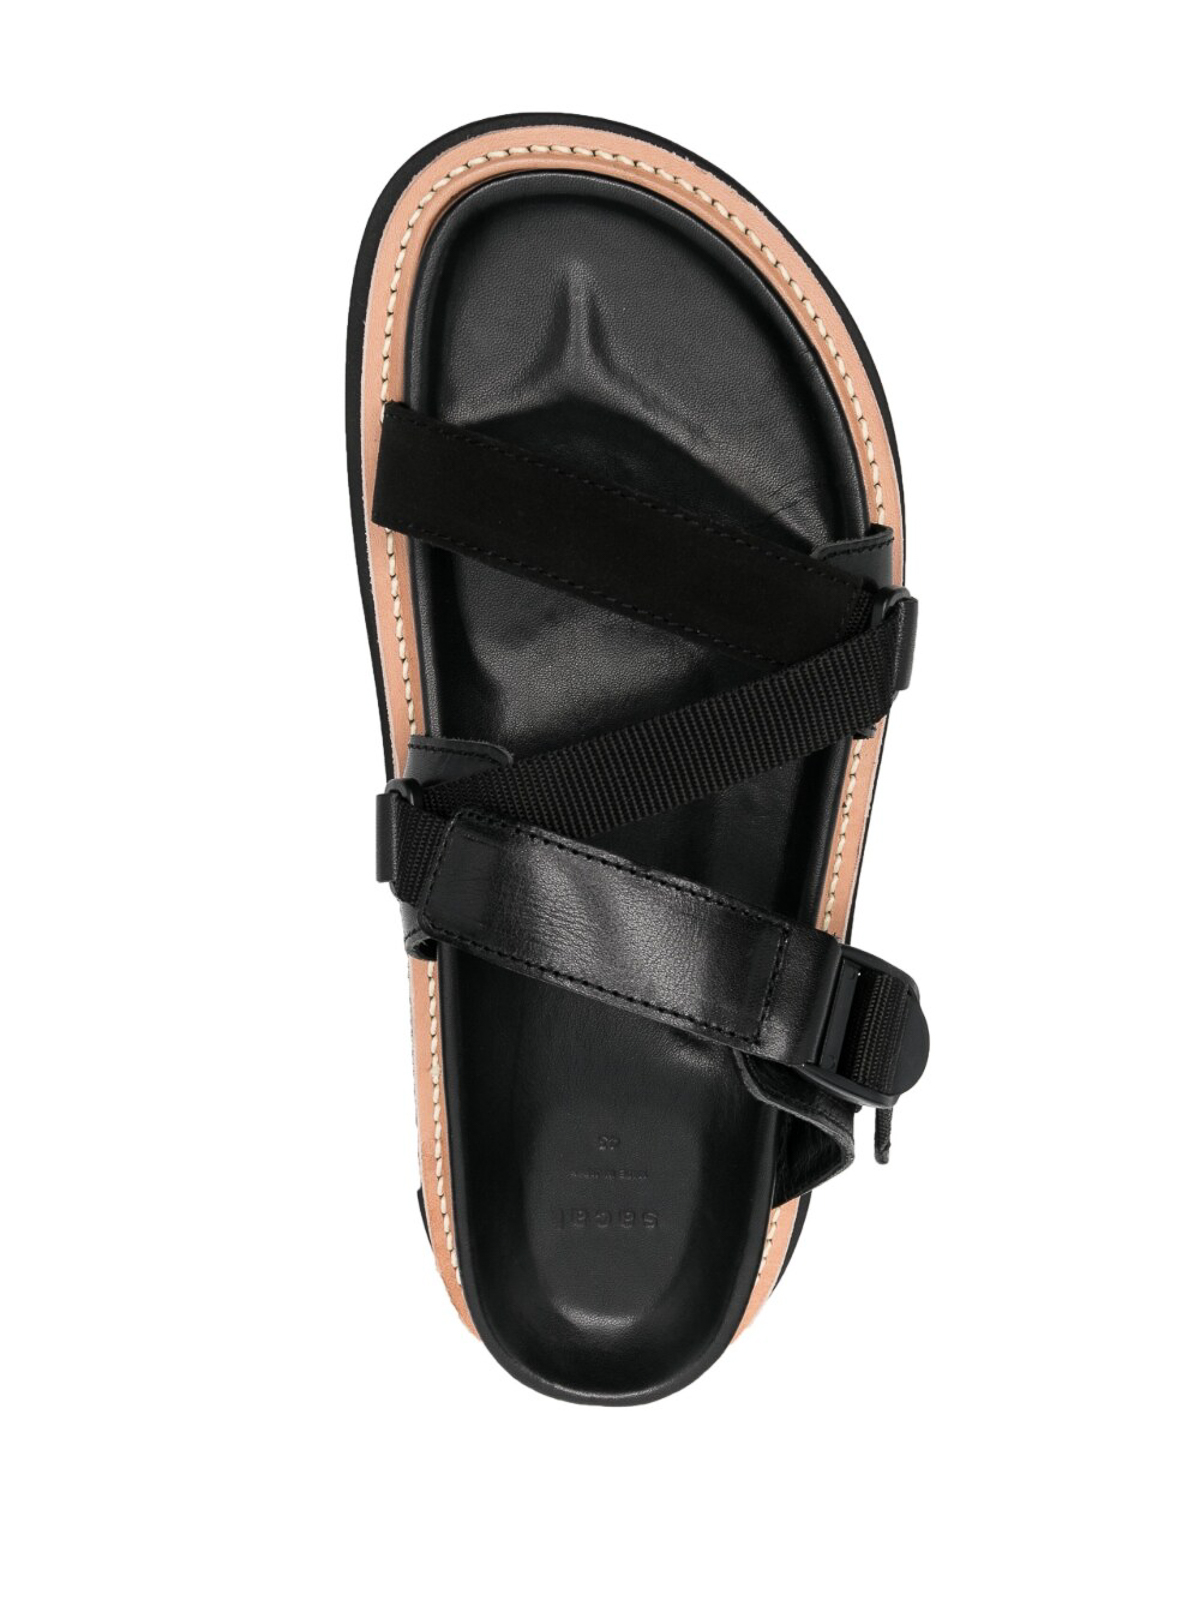 Shop Sacai Sandals Black